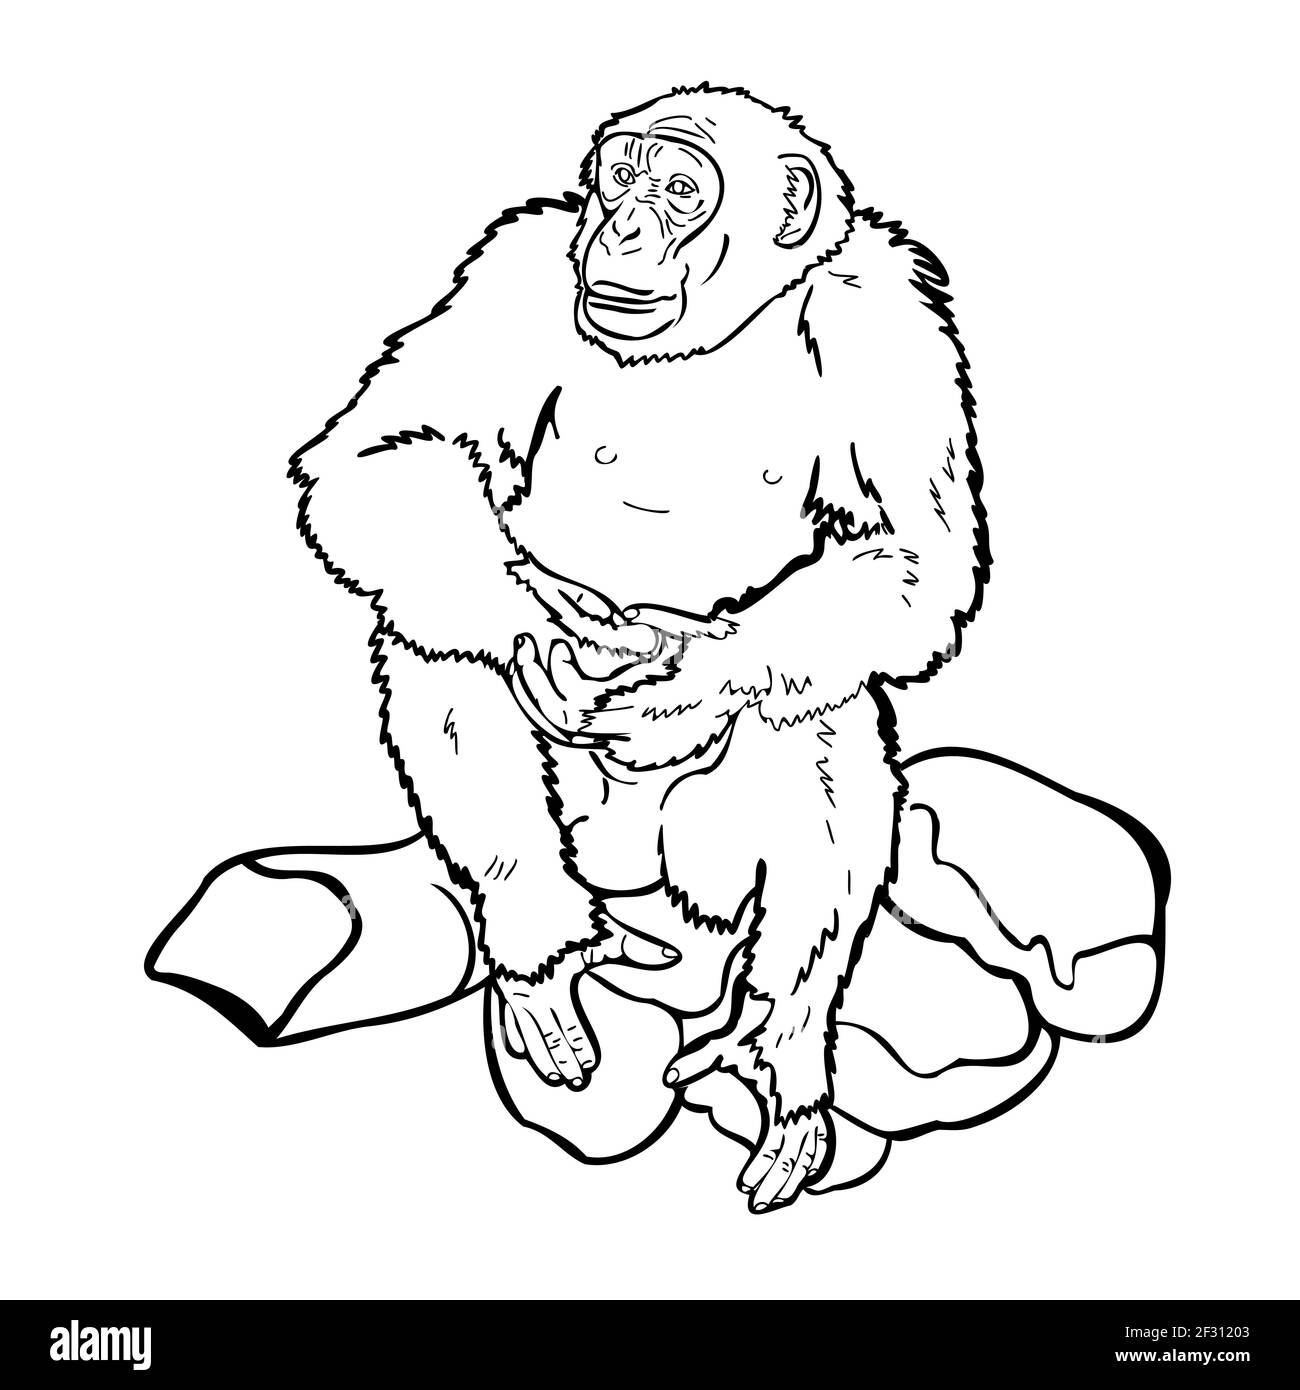 Schimpansen auf Felsen sitzend, Zeichnung illustraion schwarz-weiß, Vektor-Illustration. Stock Vektor